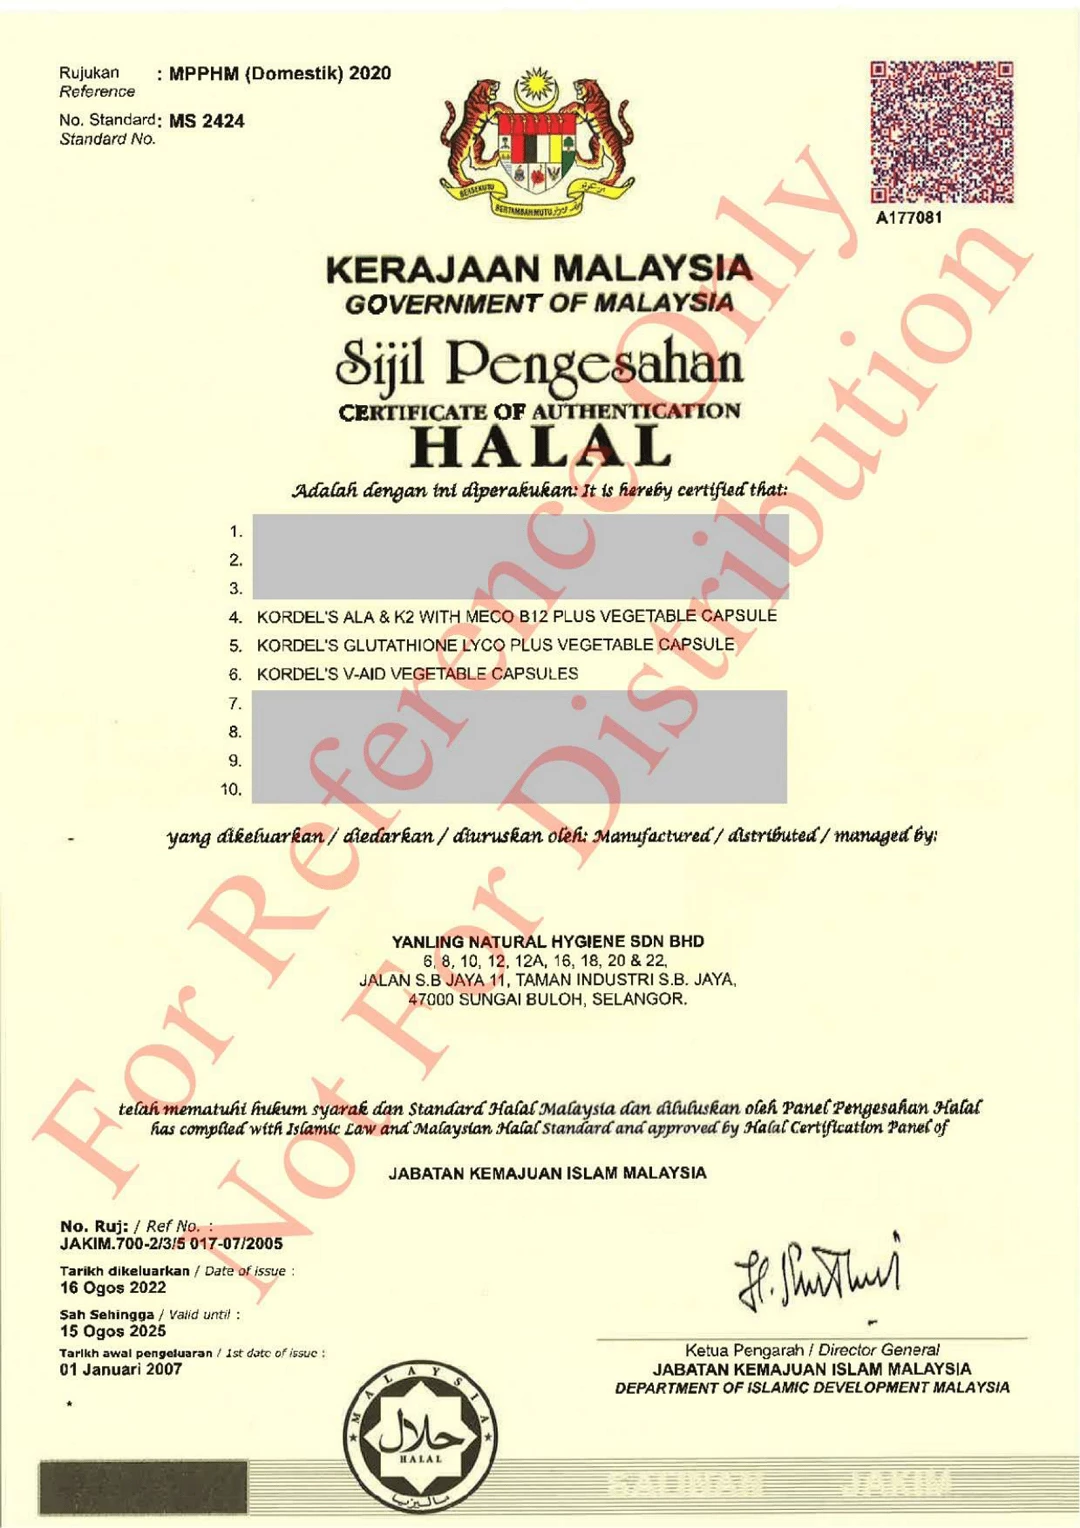 Halal Certification For Kordel's ALA K2 Glutathione Lyco Plus V-Aid